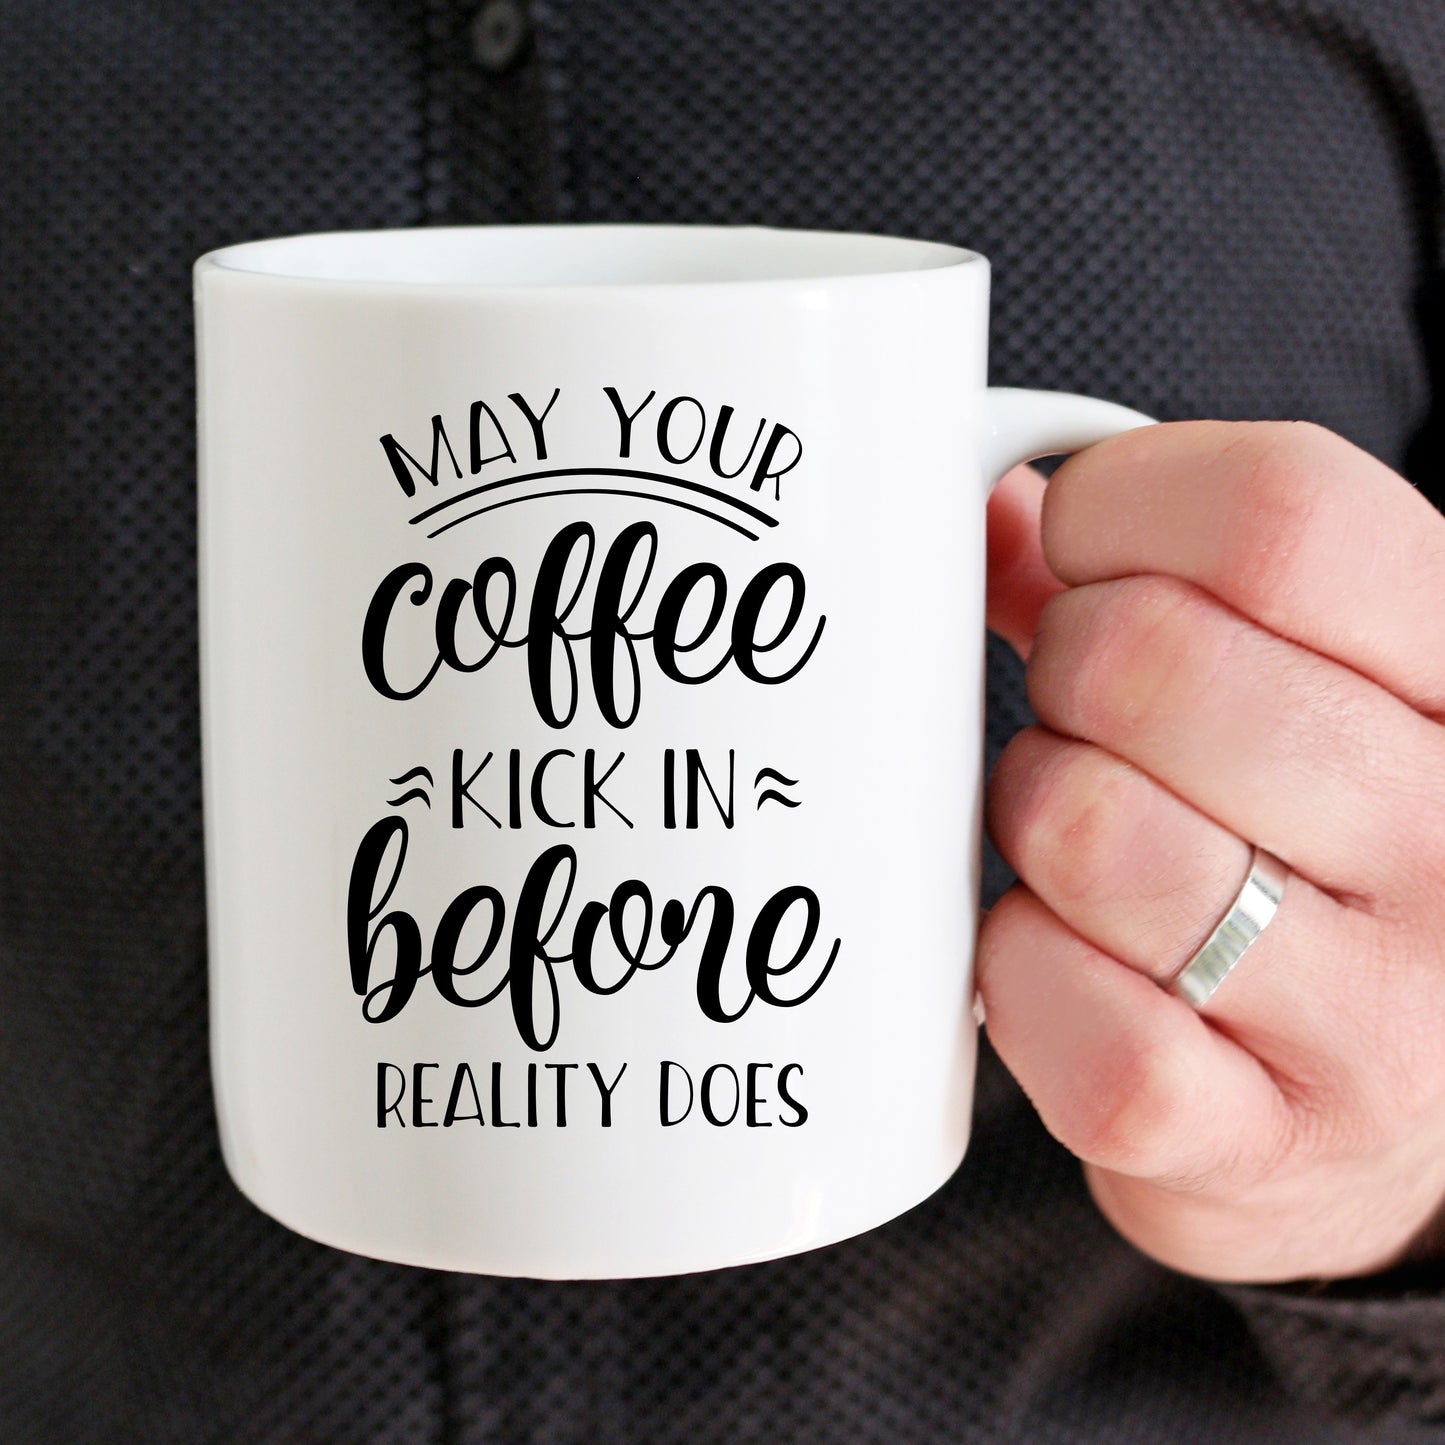 Cute "May Your Coffee Kick In" mug